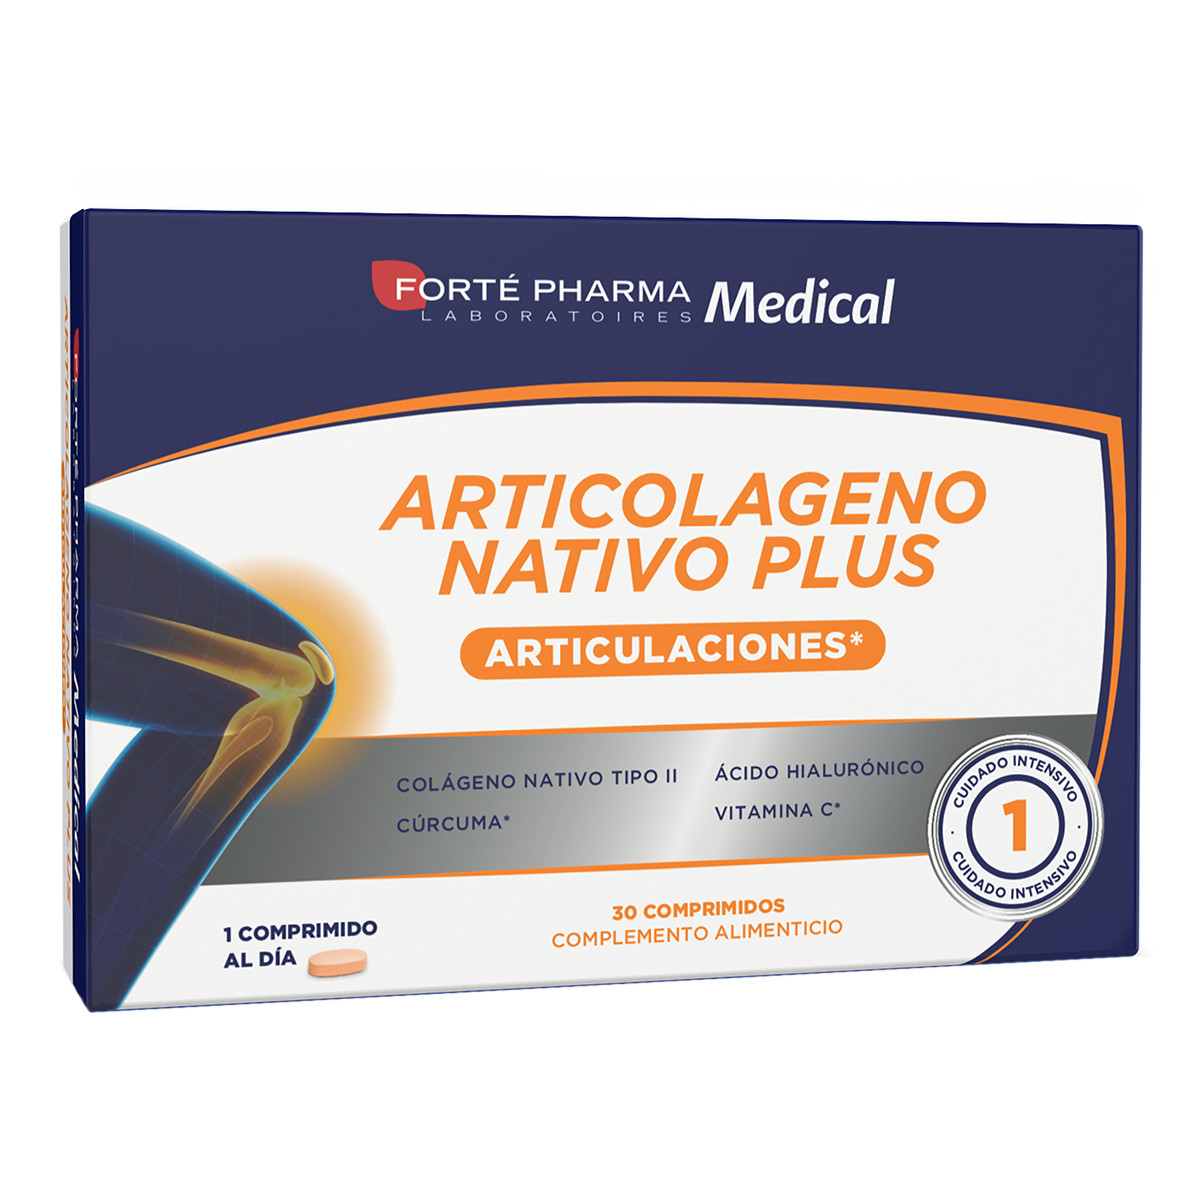 Imagen de Forte pharma articolageno nativo plus 30 comprimidos